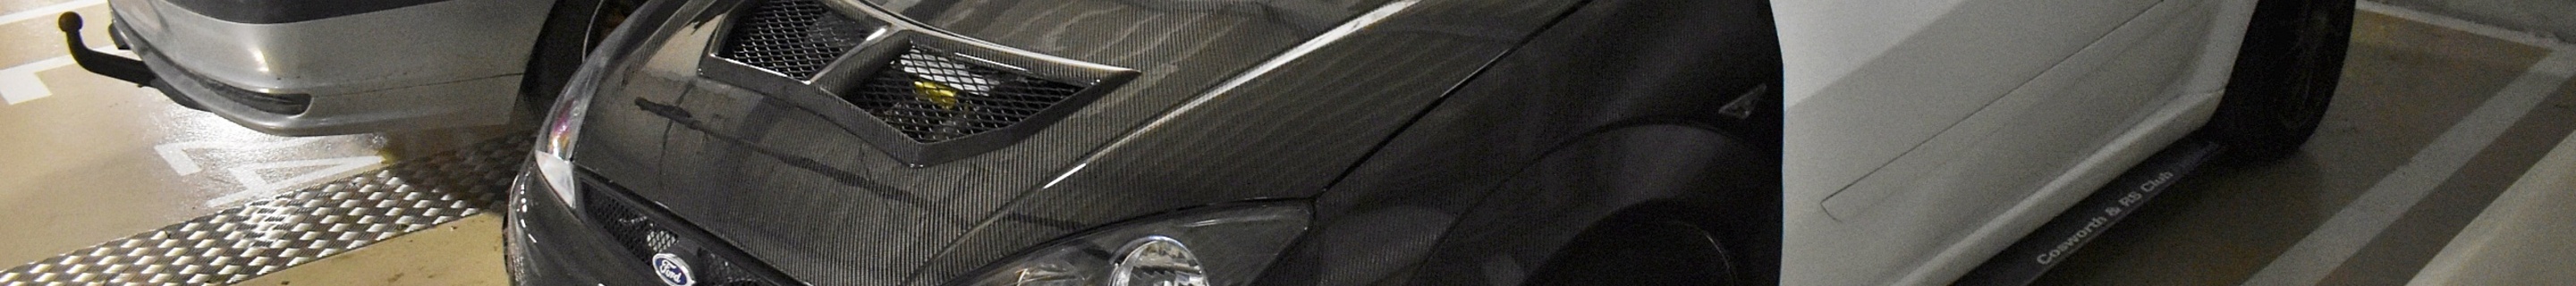 Ford Focus RS JTK Composites